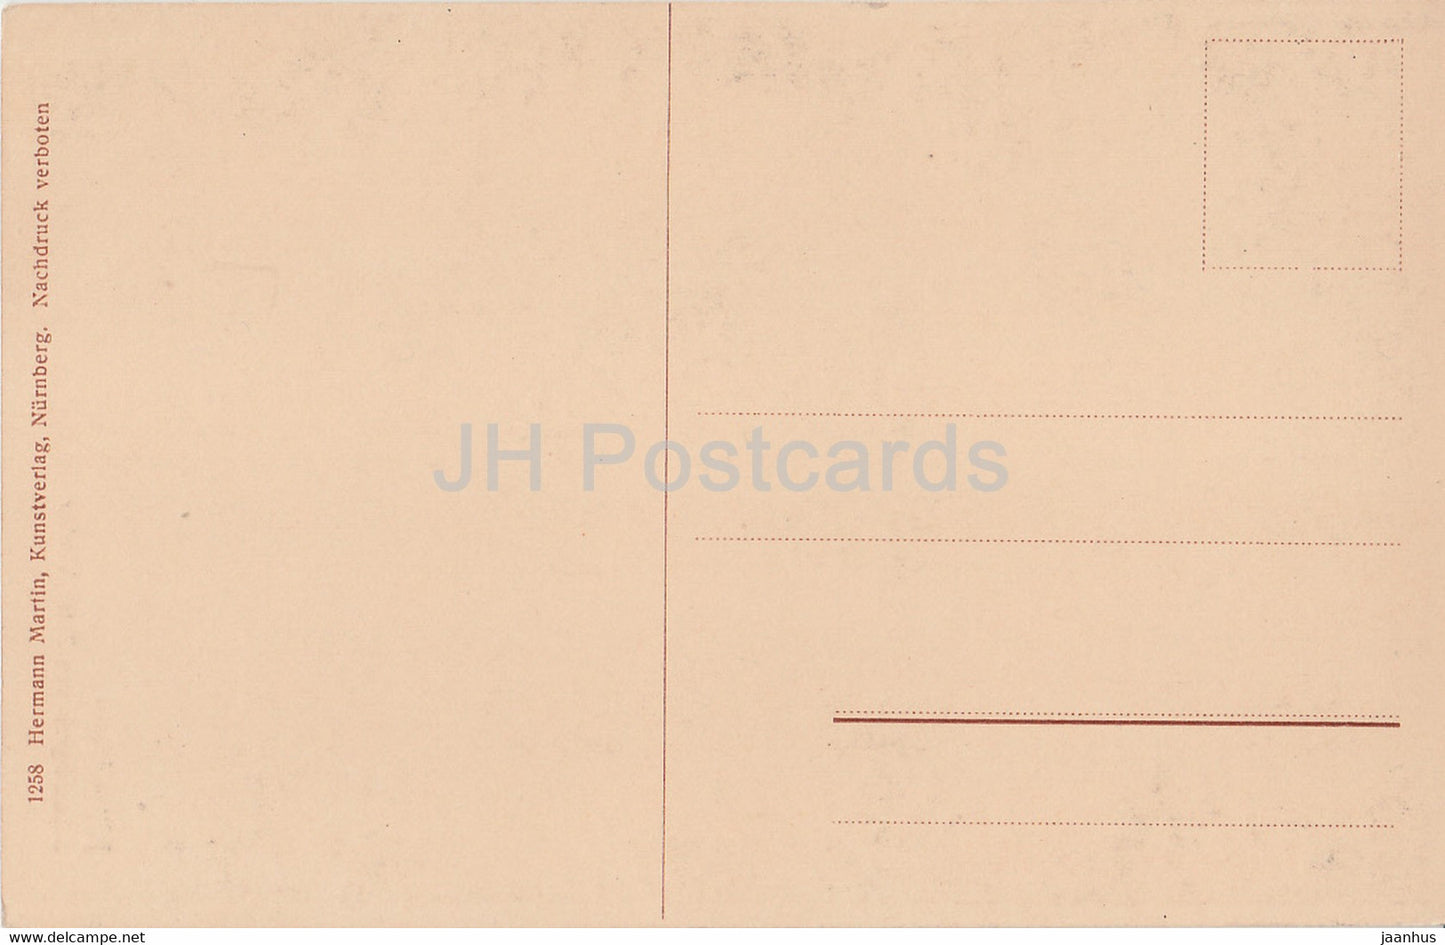 Nurnberg - Sebaldusgrab von Peter Vischer - 1 - old postcard - Germany - unused